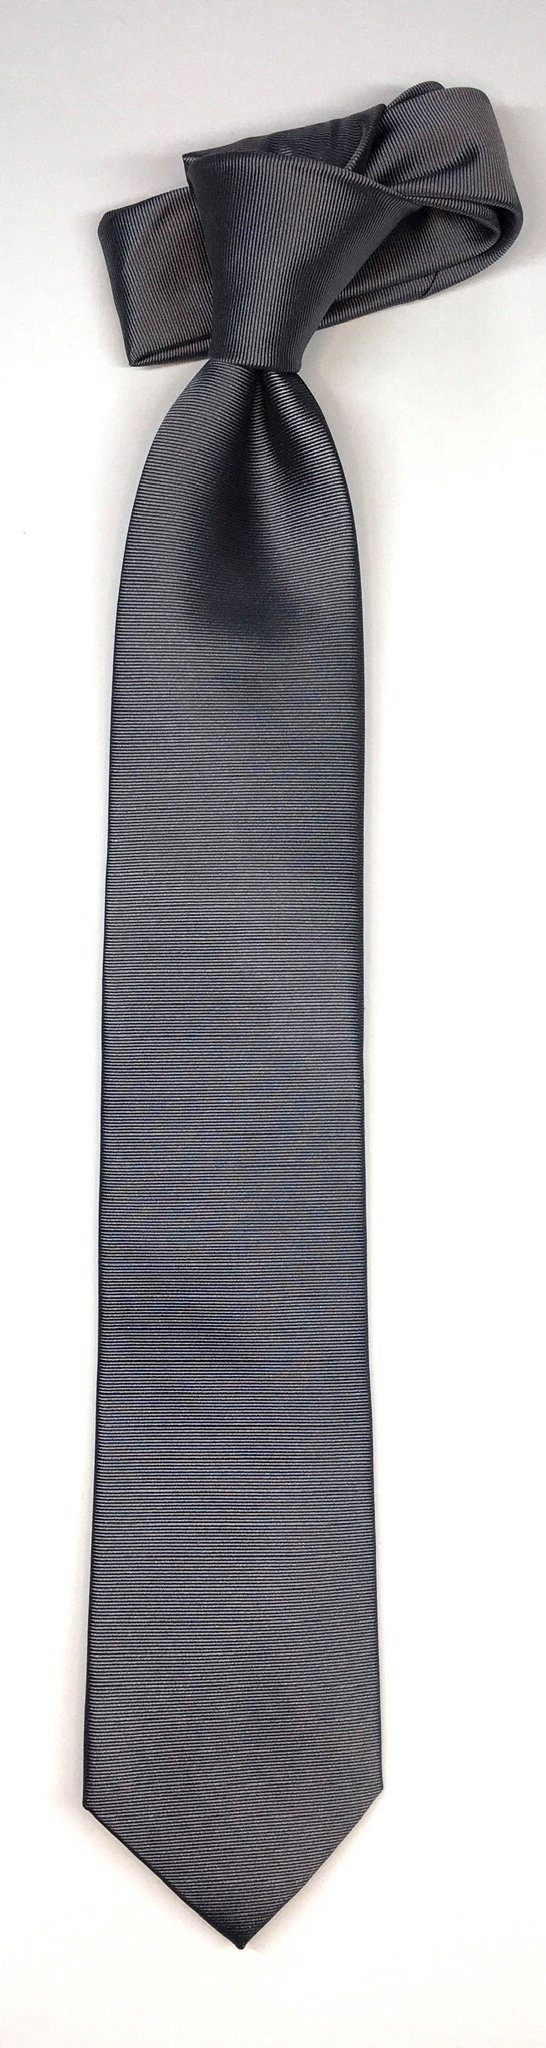 Seidenfalter Krawatte Seidenfalter 6cm Silber Uni Krawatte